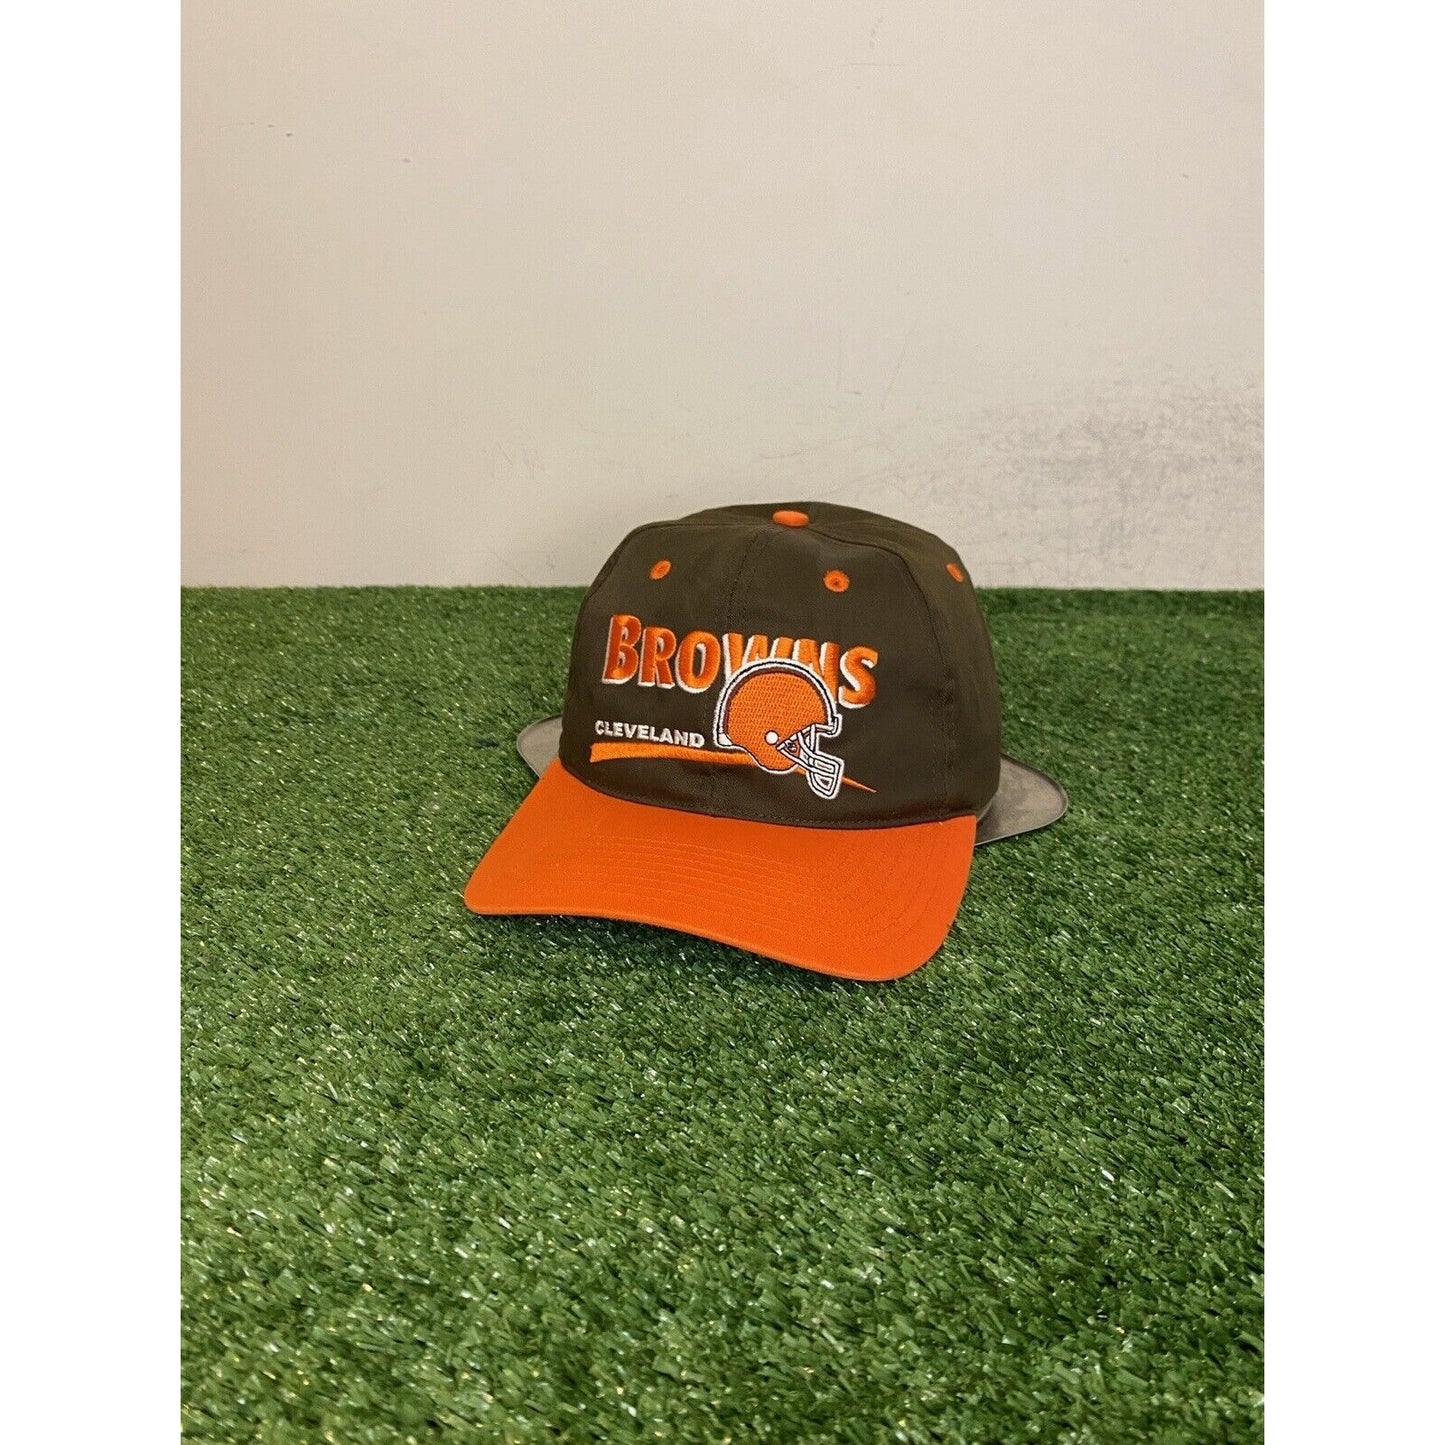 Vintage Cleveland Browns hat cap snap back orange brown split bar 90s mens retro